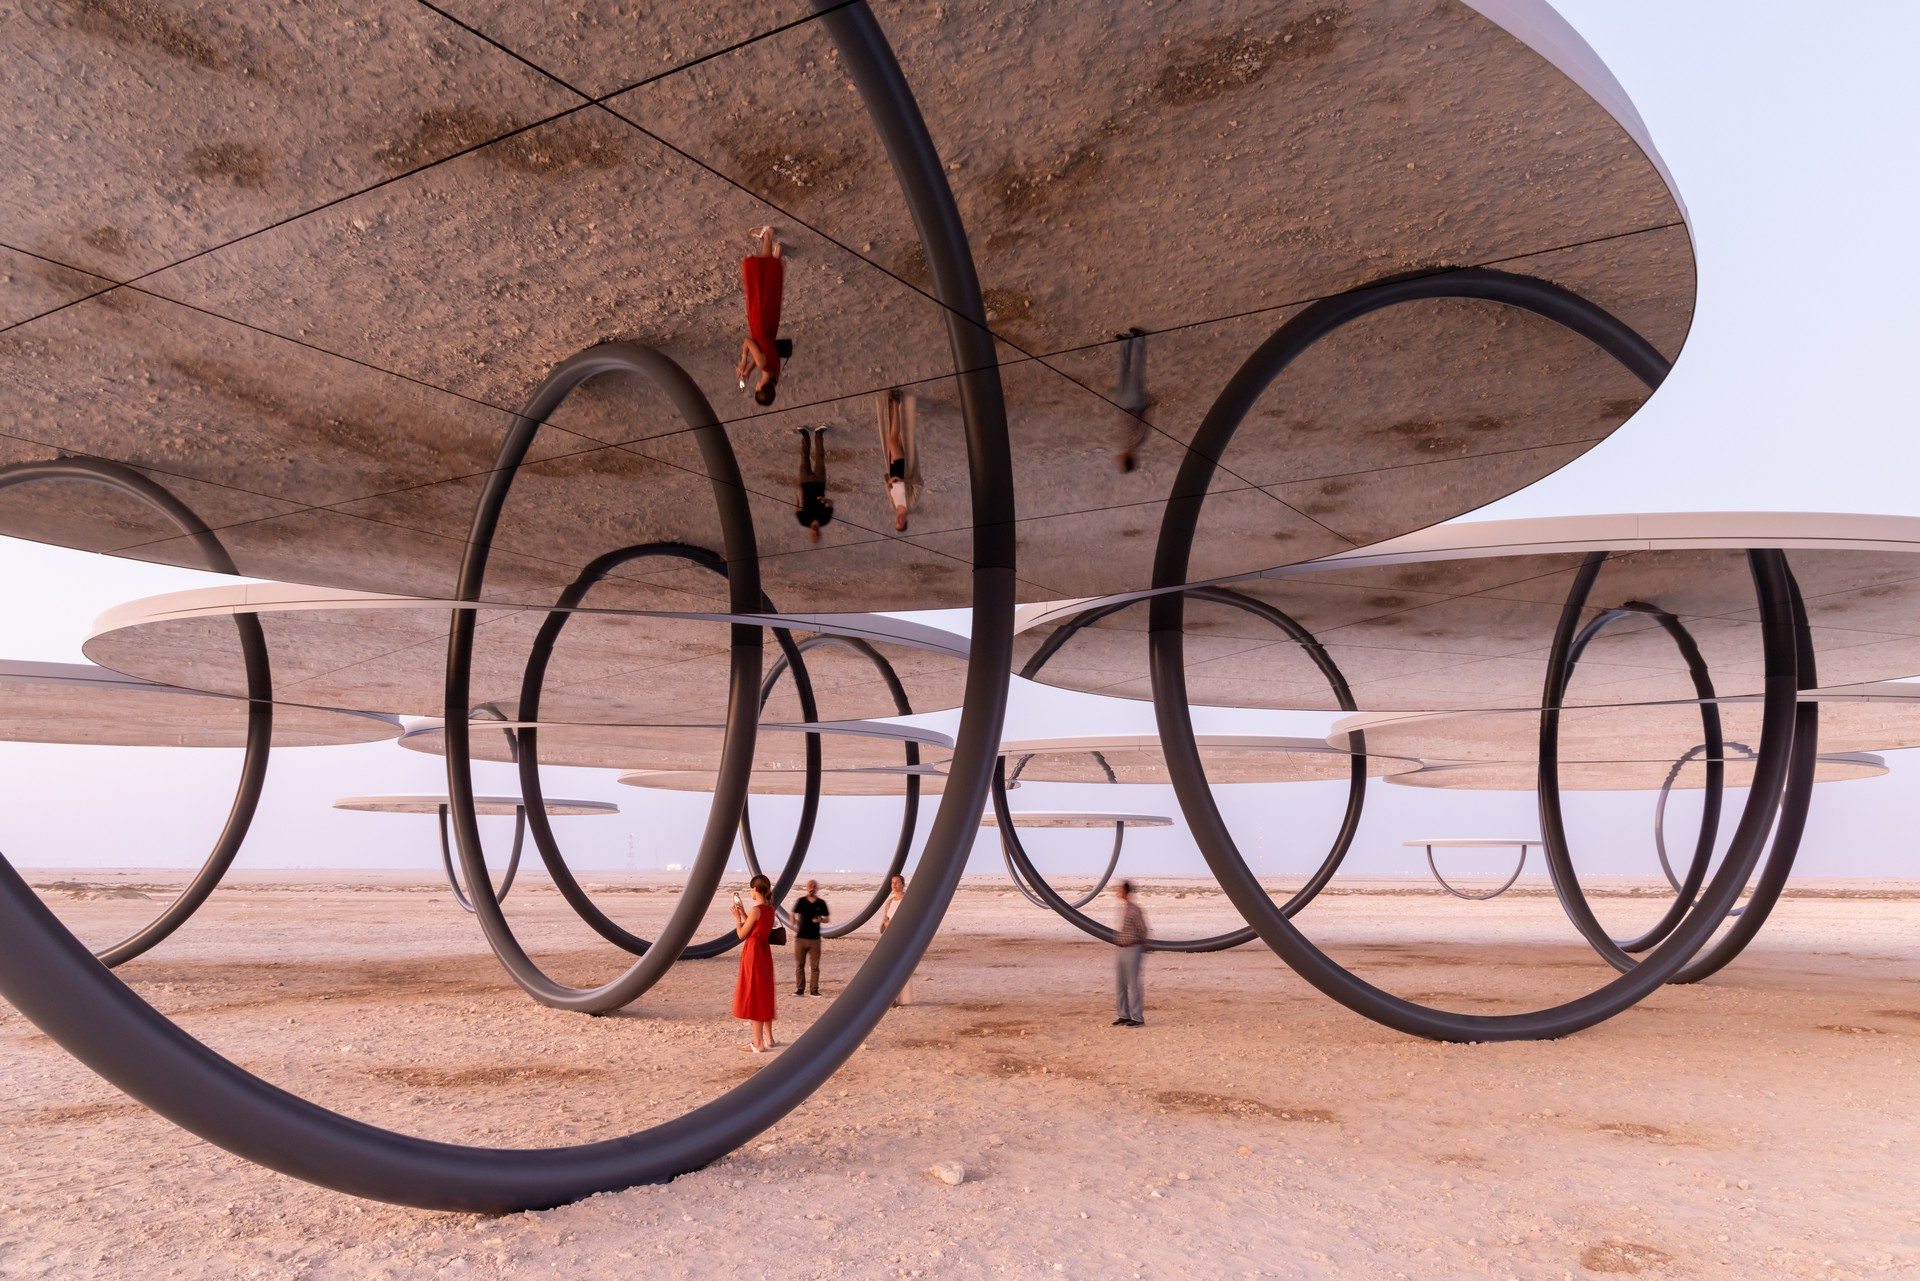 En plein désert, l'artiste Olafur Eliasson crée de gigantesques mirages